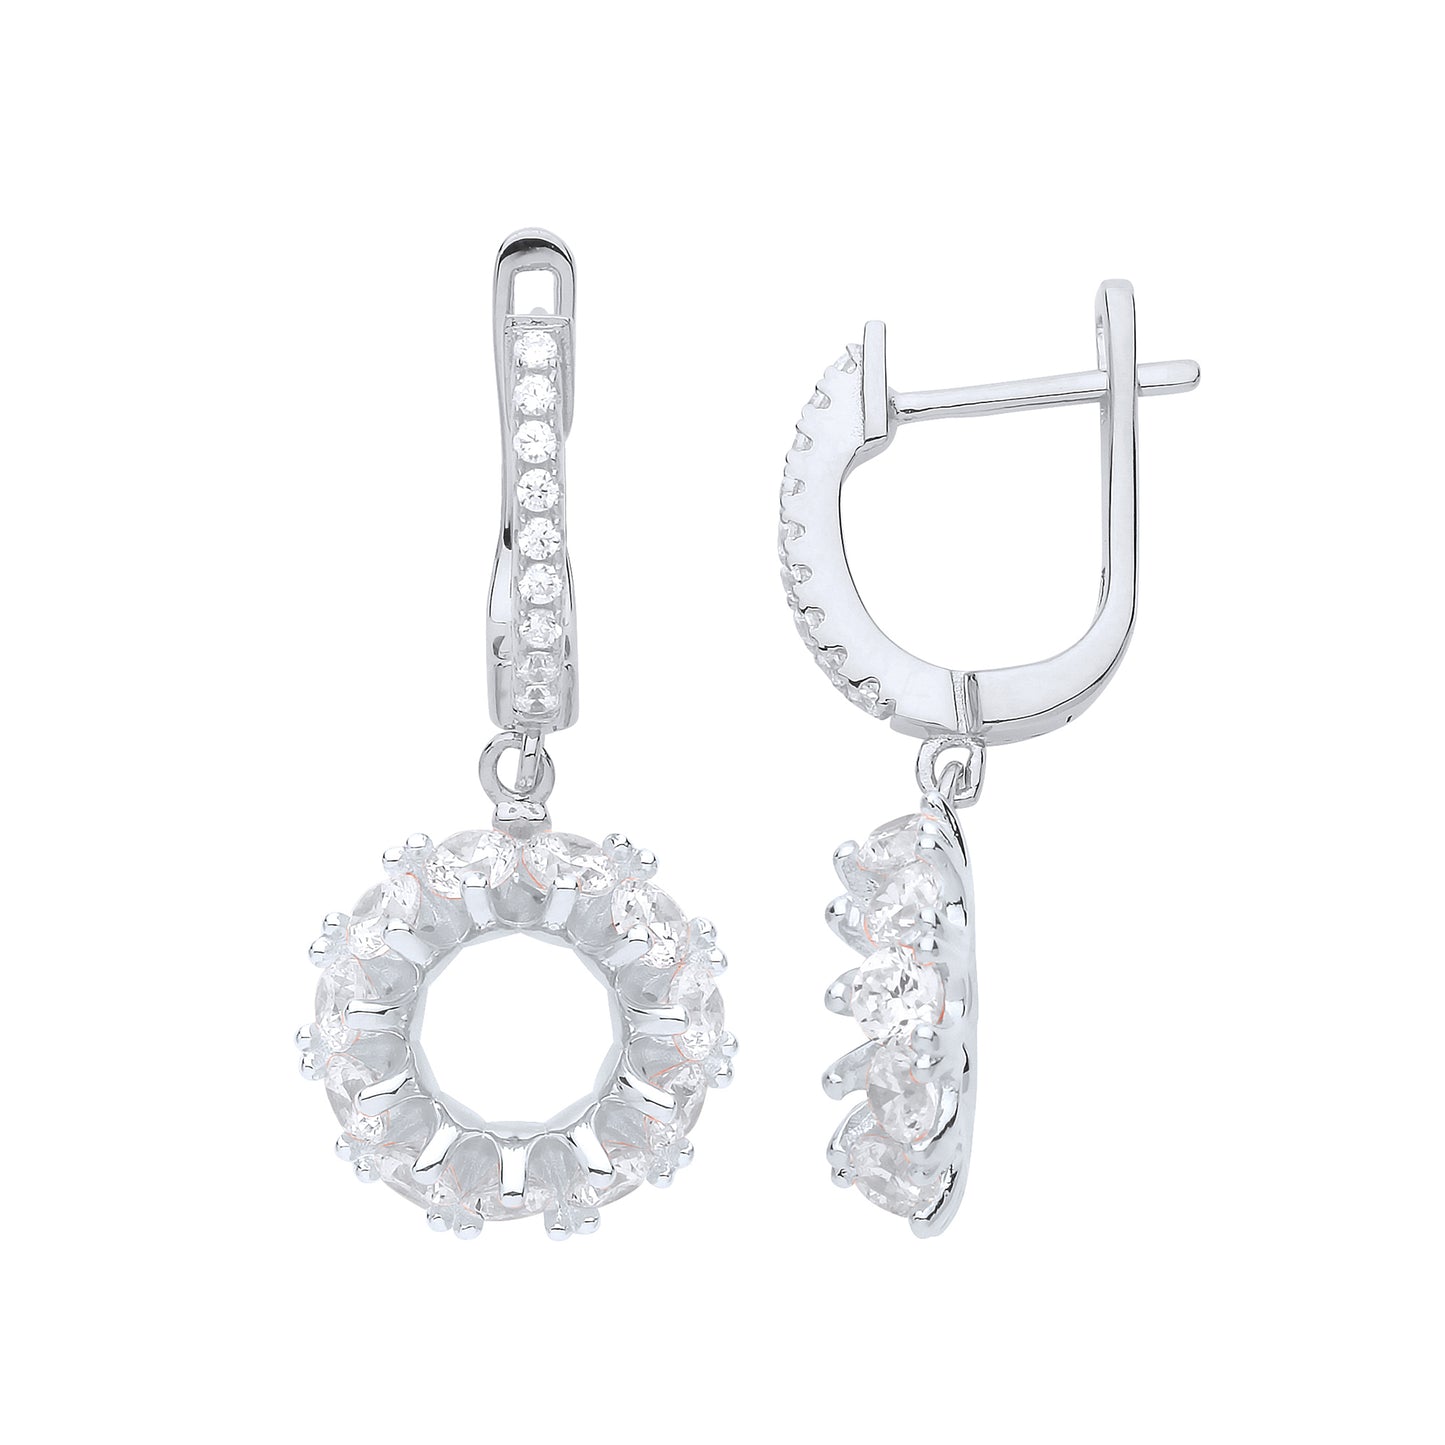 Silver  CZ Eternity Ring Style Drop Earrings - GVE855